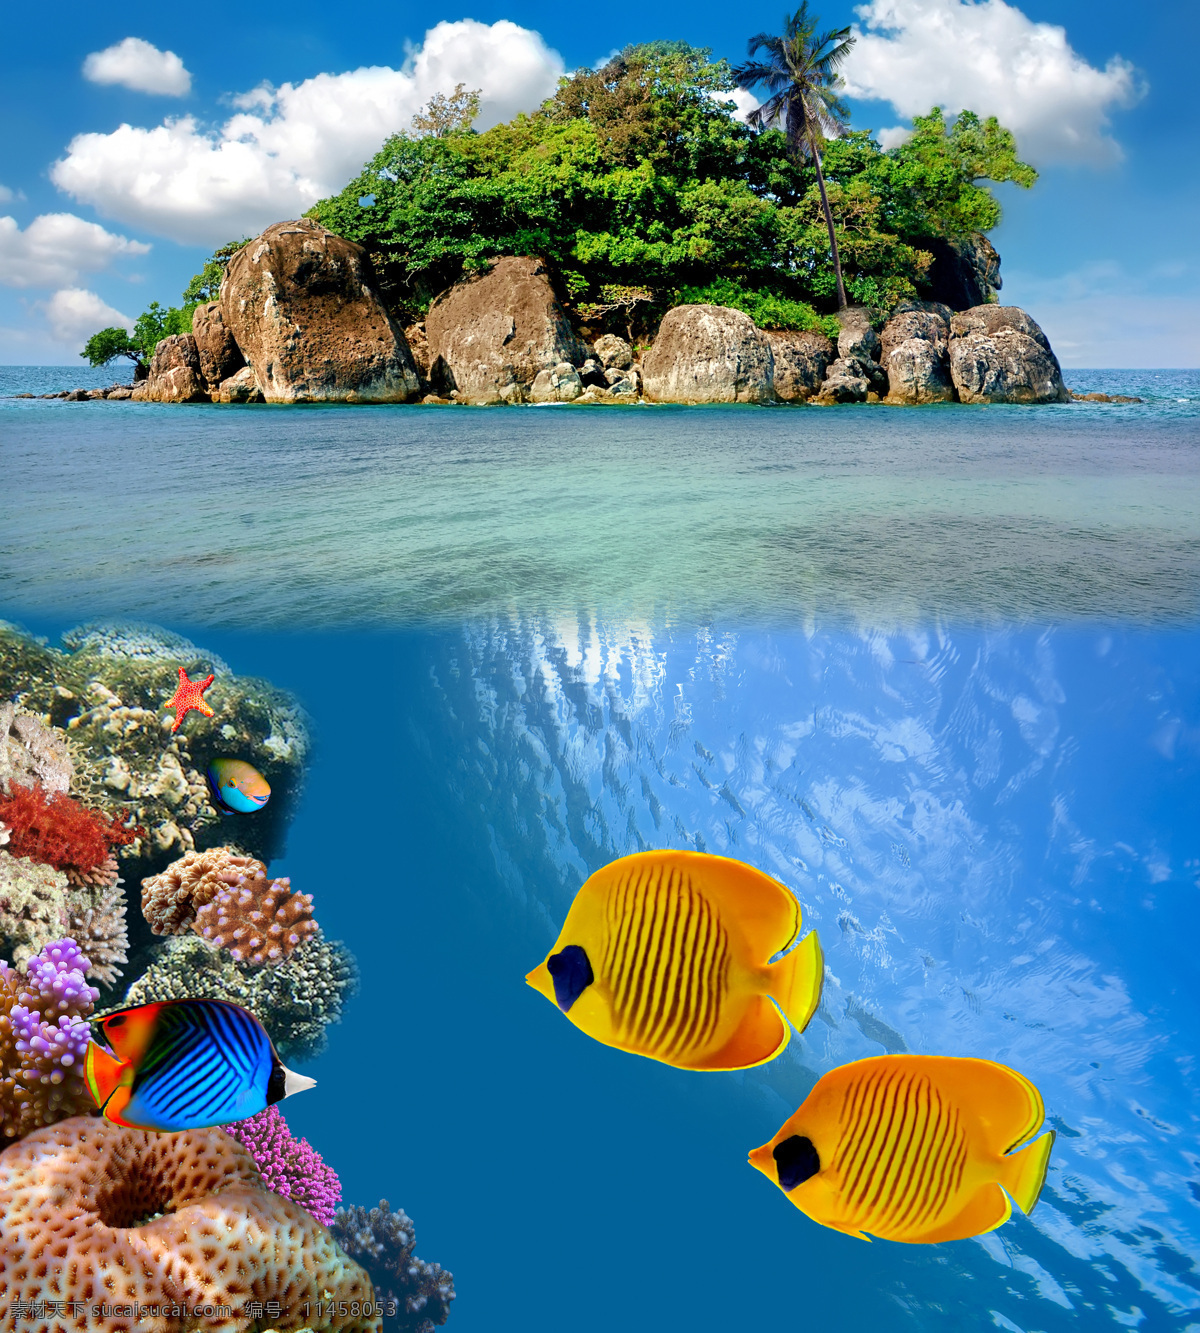 海岛 海底 世界 高清 海底世界 海洋馆 海鱼 海水 深海 水族 鱼类 鱼群 海洋生物 生物世界 动物 珊瑚 蓝天白云 风景 摄影图 高清图片 海洋海边 自然景观 蓝色